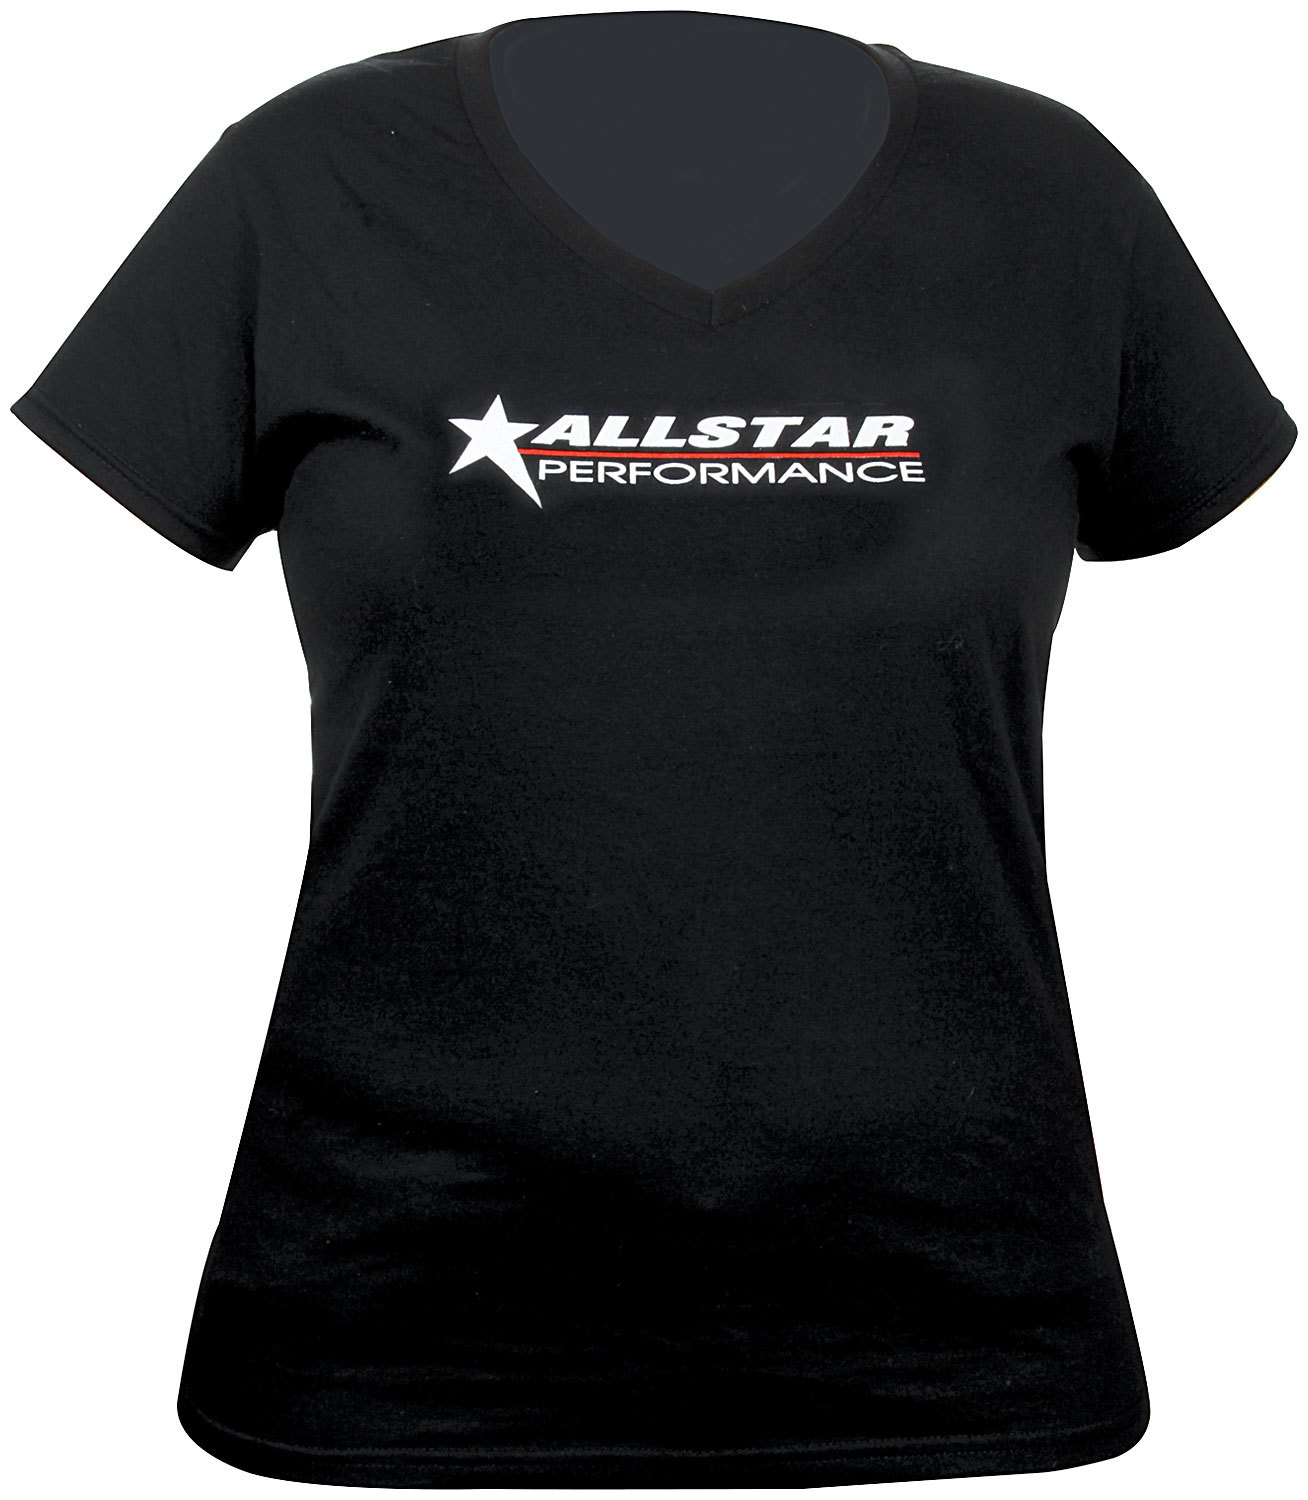 Allstar Performance  T-Shirt Ladies Black V-Neck Medium